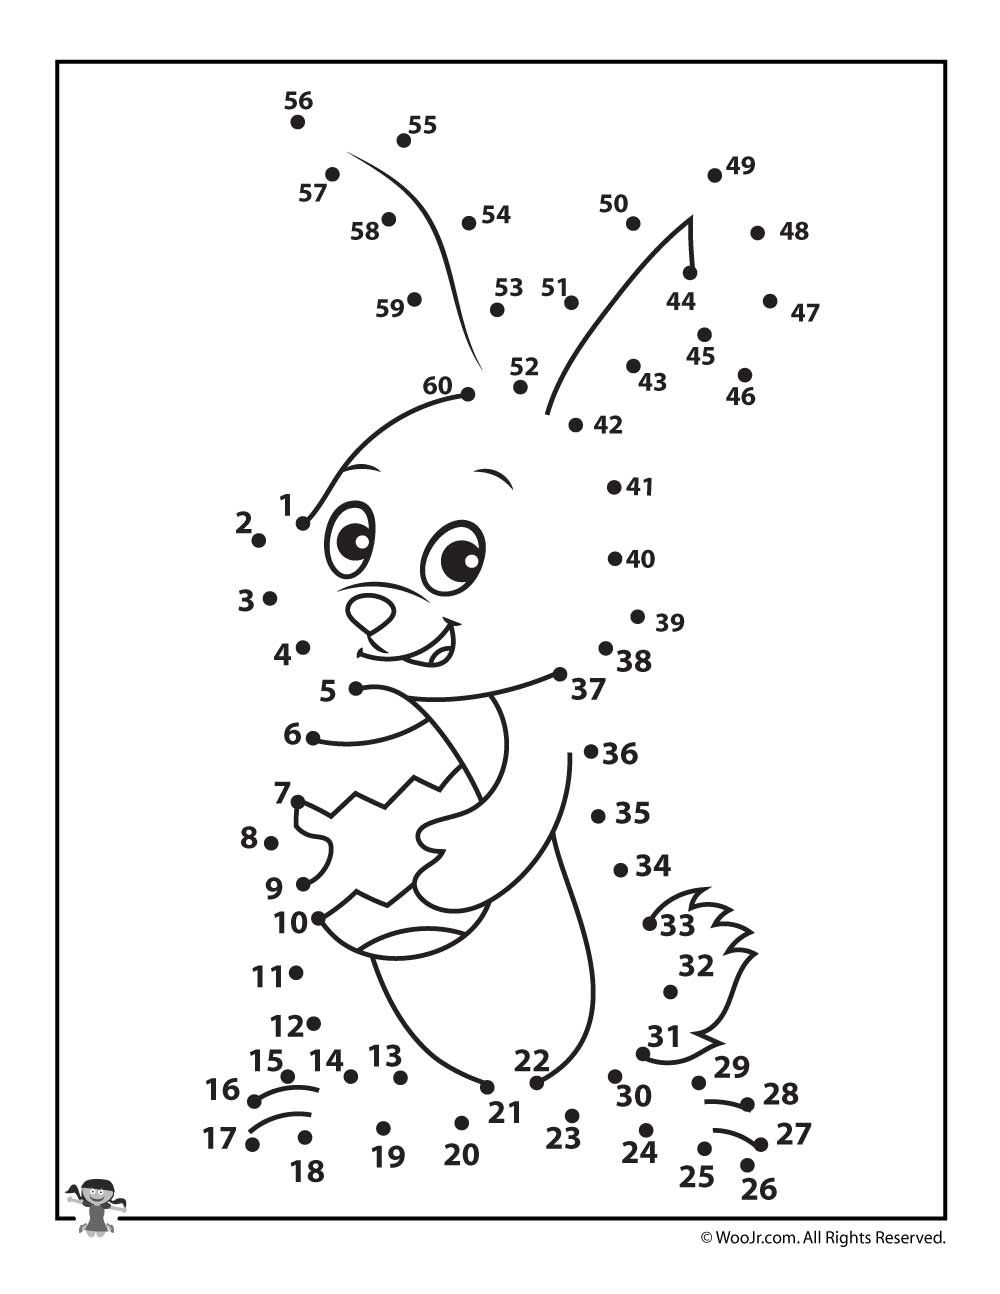 Dot to dot Easter rabbit printable